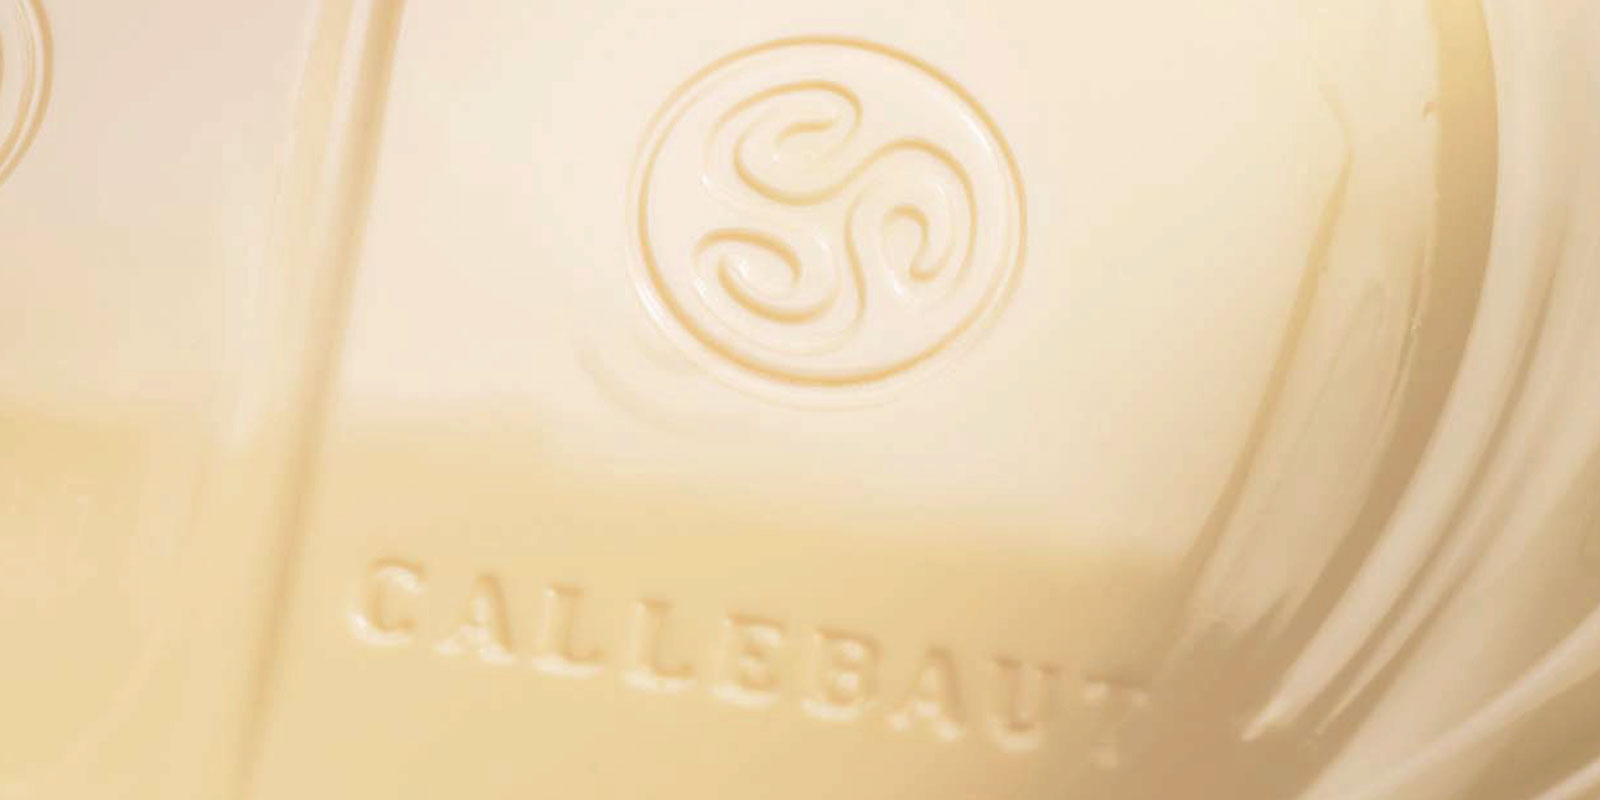 Hvid chokolade fra Callebaut Hvid chokolade er resultatet af at blande kakaosmoer, maelkepulver og sukker. Blandingsforholdet mellem disse ingredienser - for eksempel vanillin, vanilje eller lecithin - bestemmer smagen af slutproduktet.